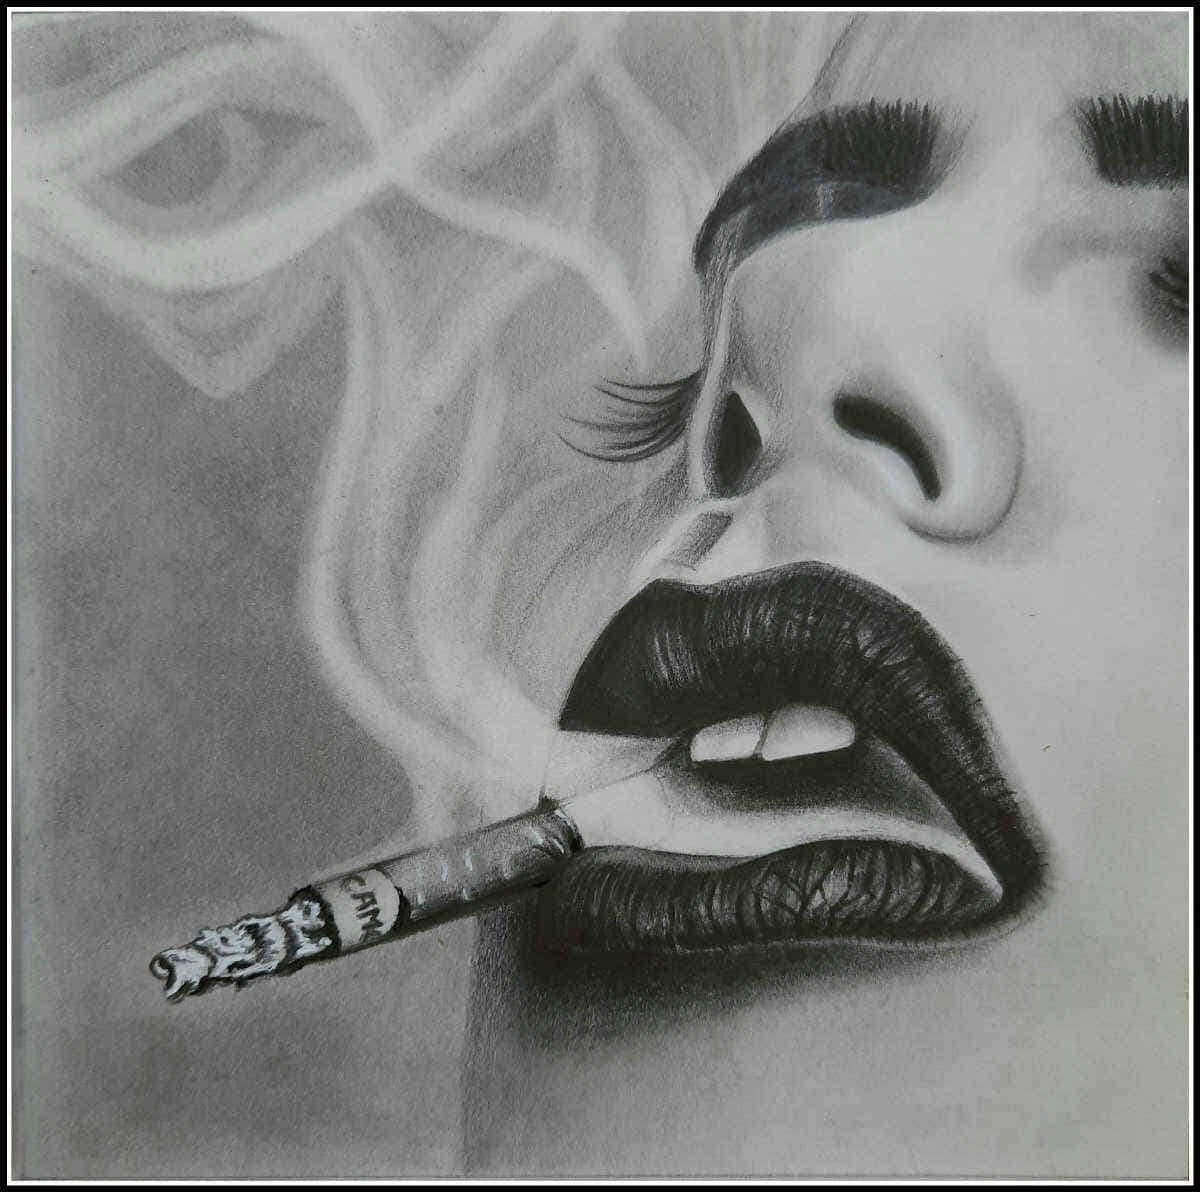 Imagensde Rascunhos De Mulher Fumando.